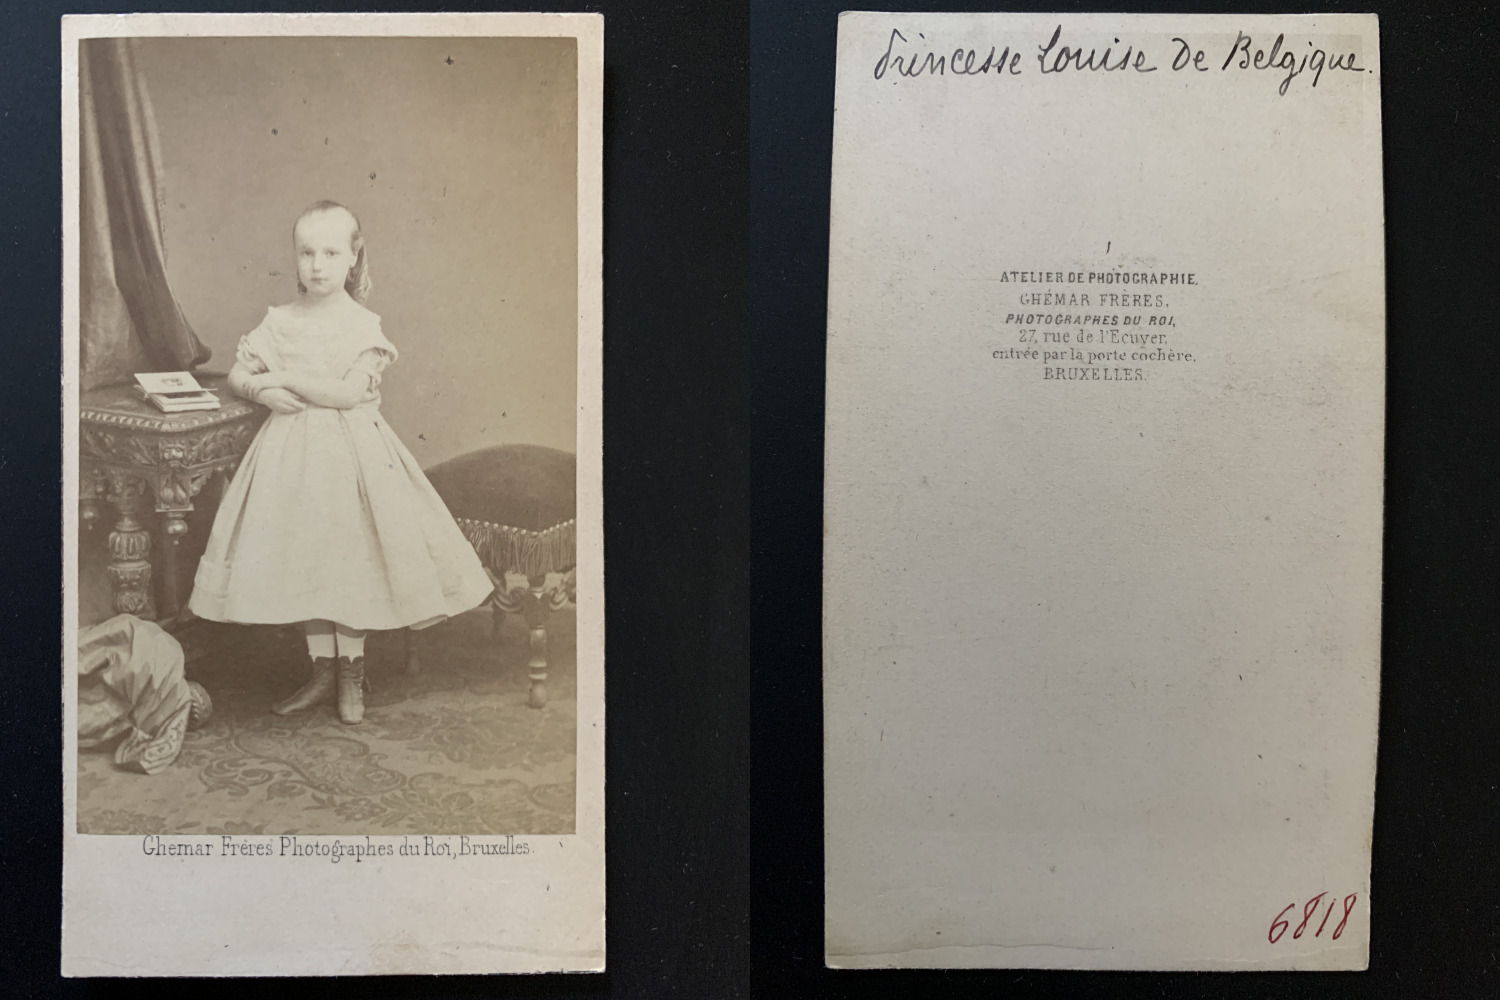 Gémar, Brussels, Louise Marie Amélie, Princess of Belgium Vintage CDV Album